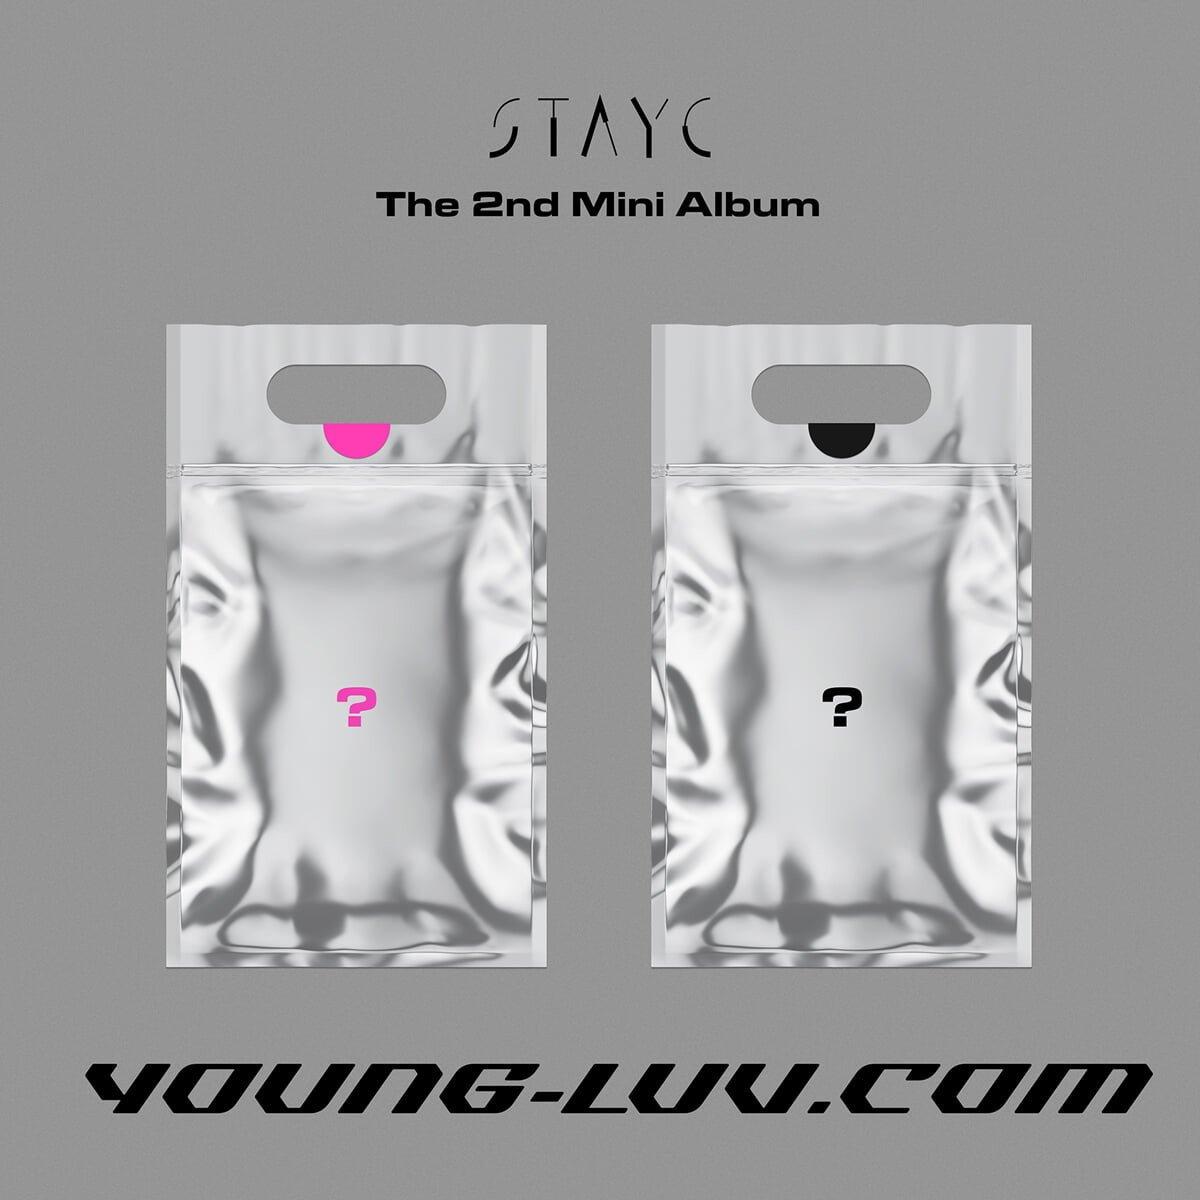 Mini album thứ 2 "Young-luv.com" của StayC sắp phát hành (Nguồn: Internet)